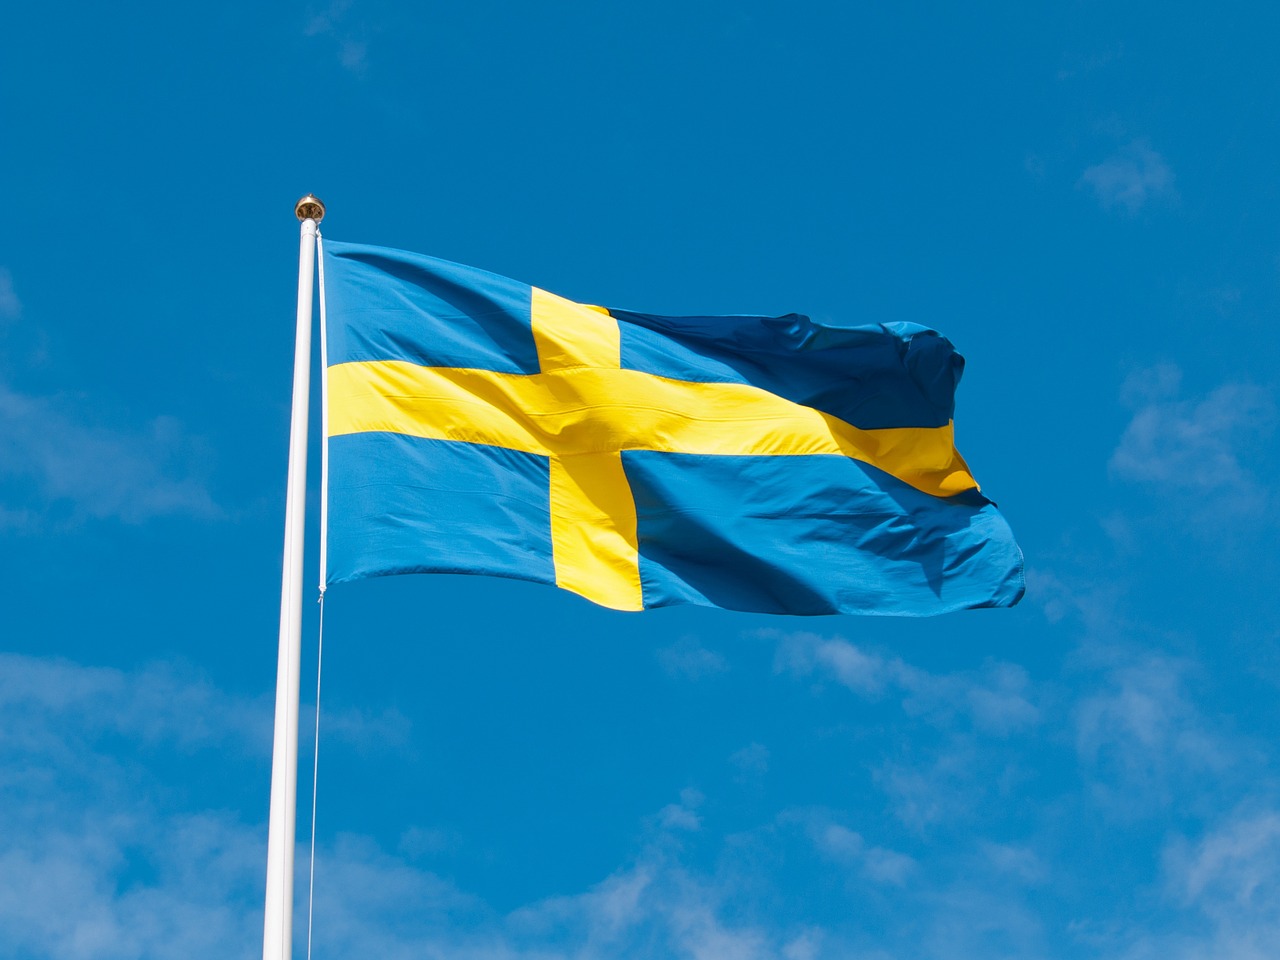 瑞典中央银行希望国际清算银行在该国建立数字货币创新中心